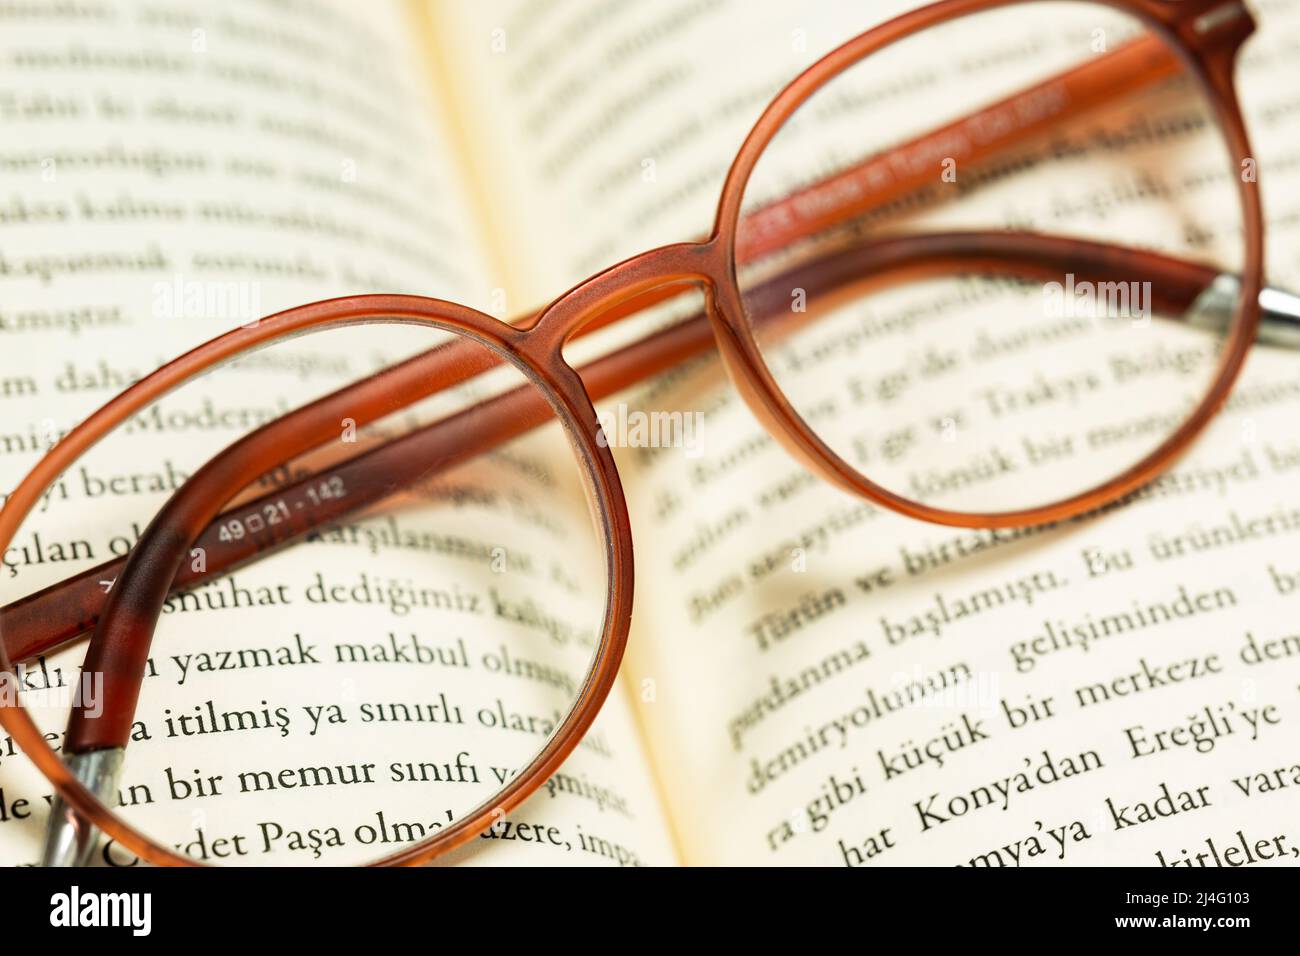 Photo d'arrière-plan vintage de verres bruns repliés sur les pages ouvertes d'un livre turc. Éducation, apprentissage, connaissance, concept de repos. Banque D'Images